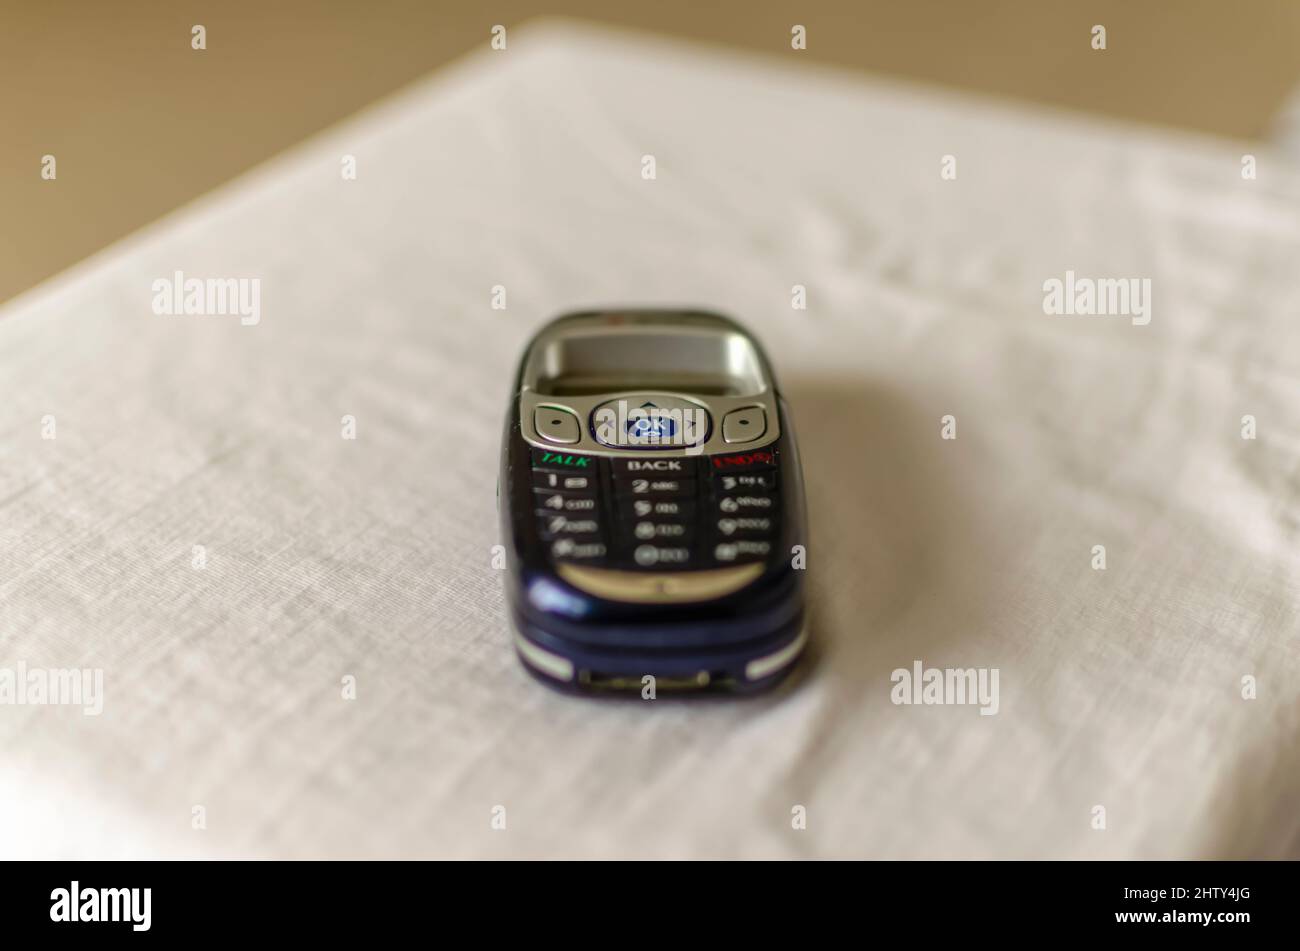 Le LG PM-325, le téléphone à images de vision Sprint PCS. Il s'agissait du premier téléphone à appareil photo VGA Bluetooth de masse de Sprint, prenant en charge les casques et l'accès à Internet. Banque D'Images